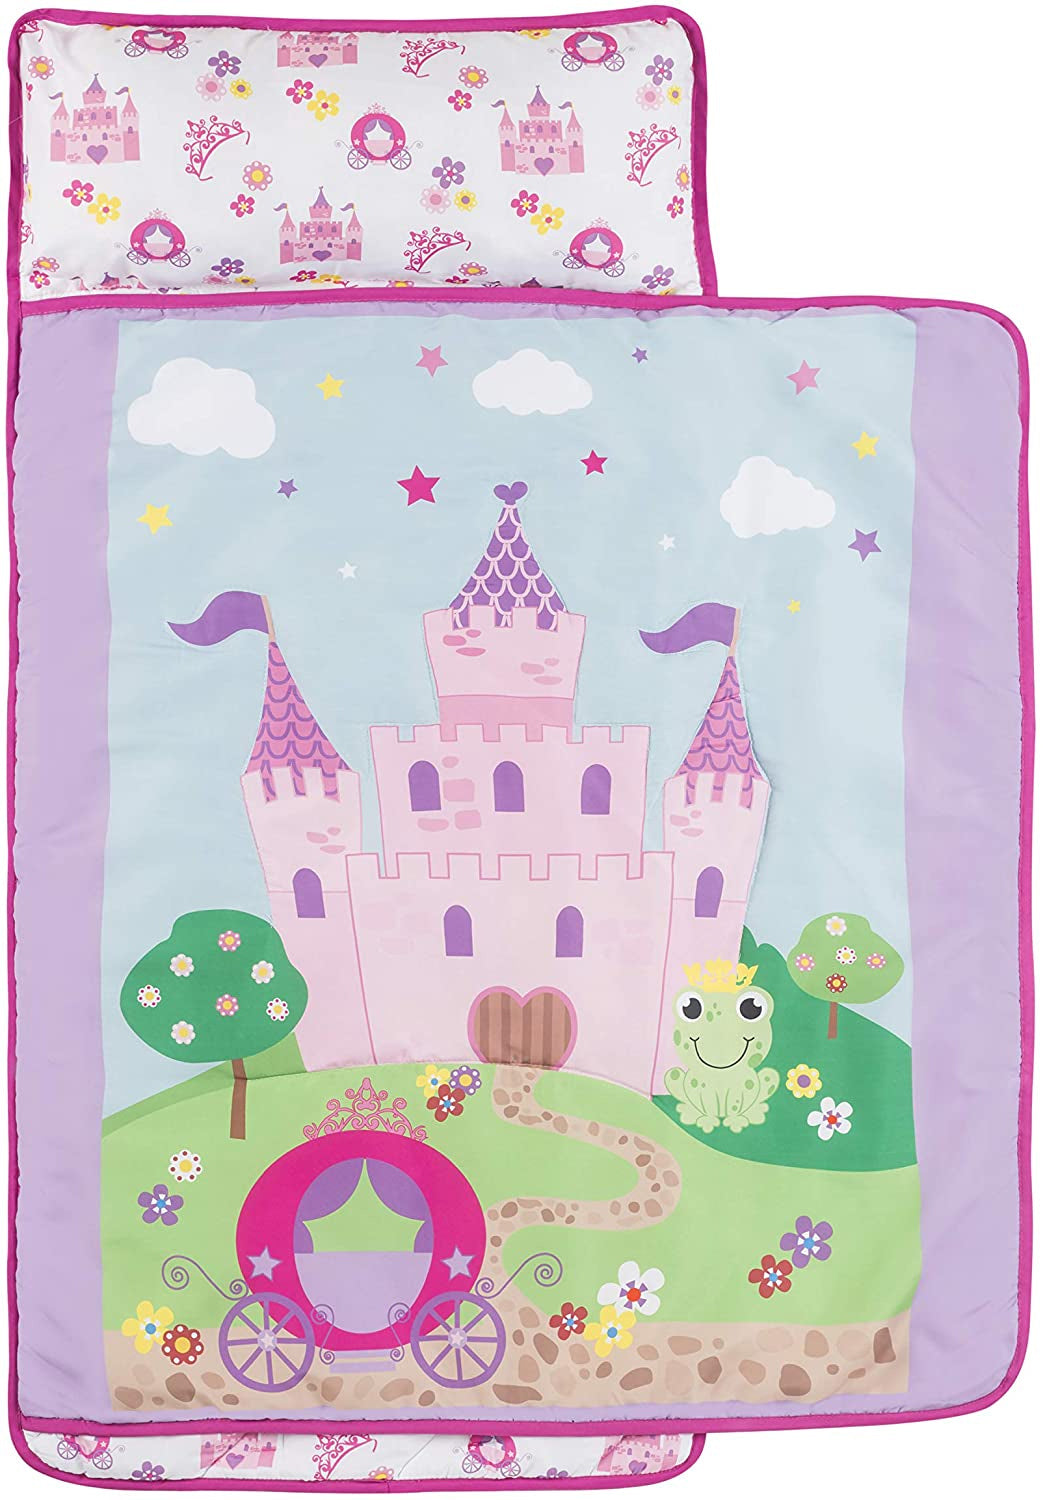 Everyday Kids Princess Storyland Toddler Nap Mat with Pillow